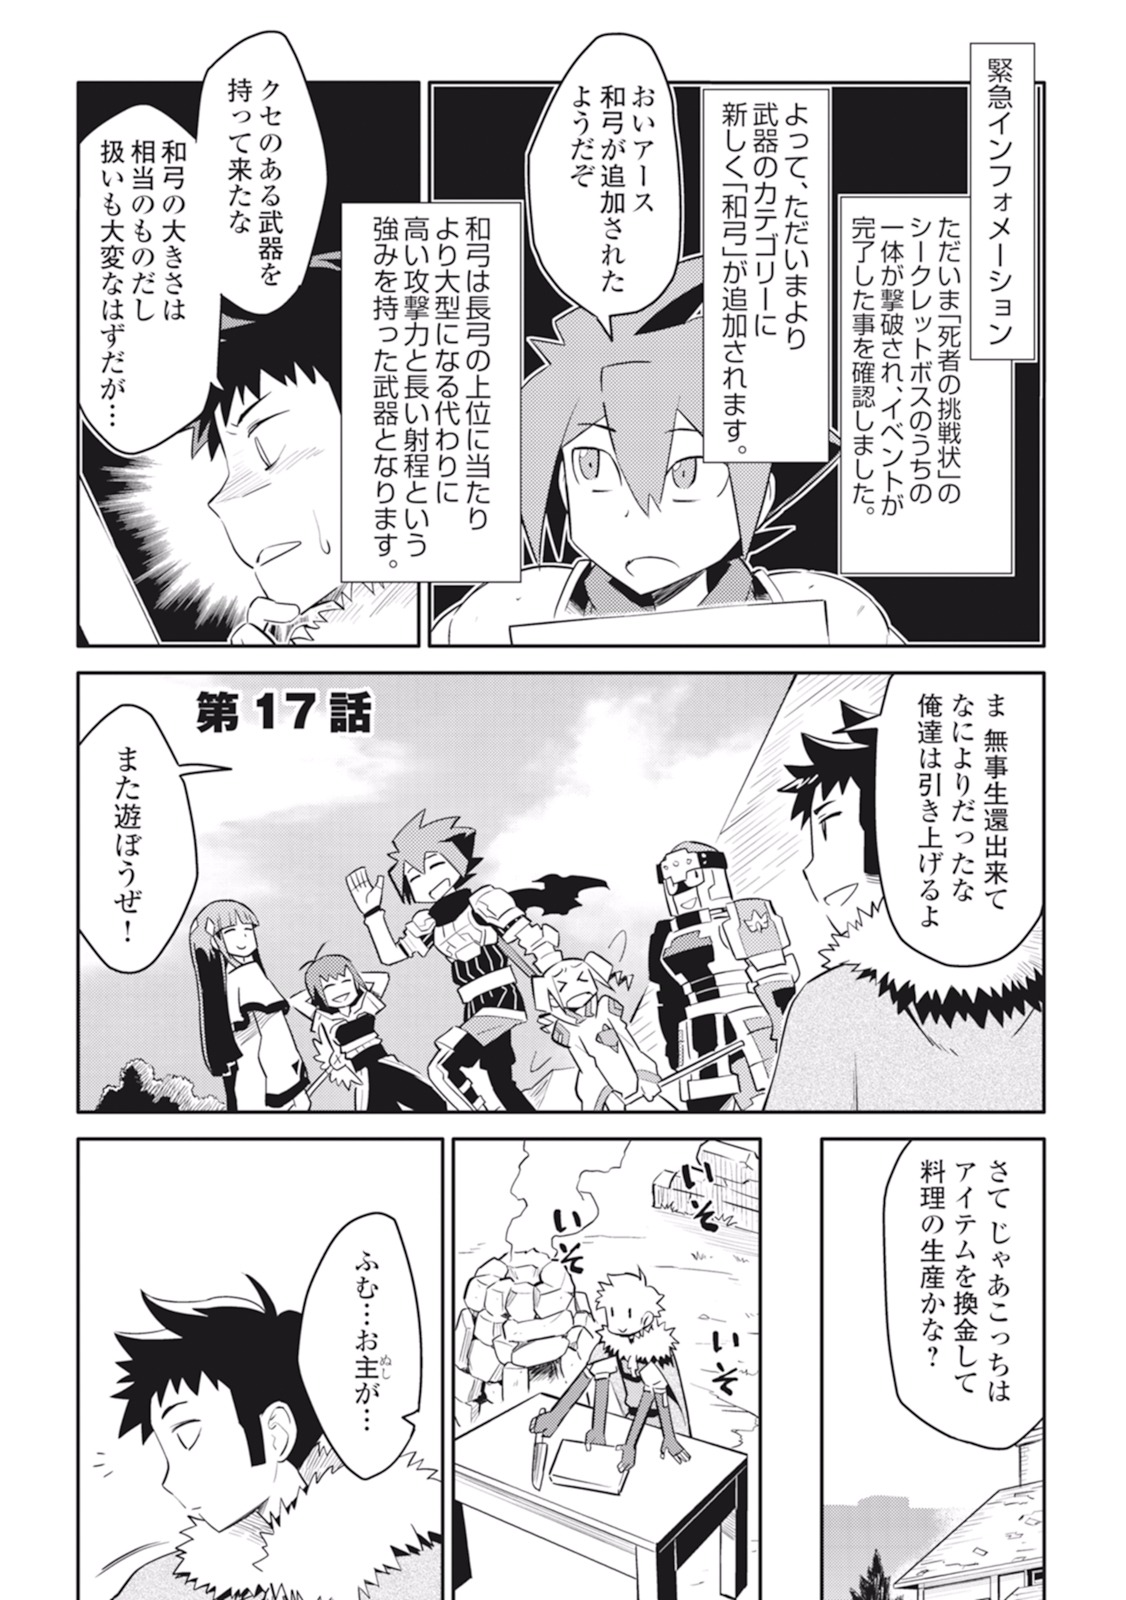 Toaru Ossan no VRMMO Katsudouki - Chapter 17 - Page 1